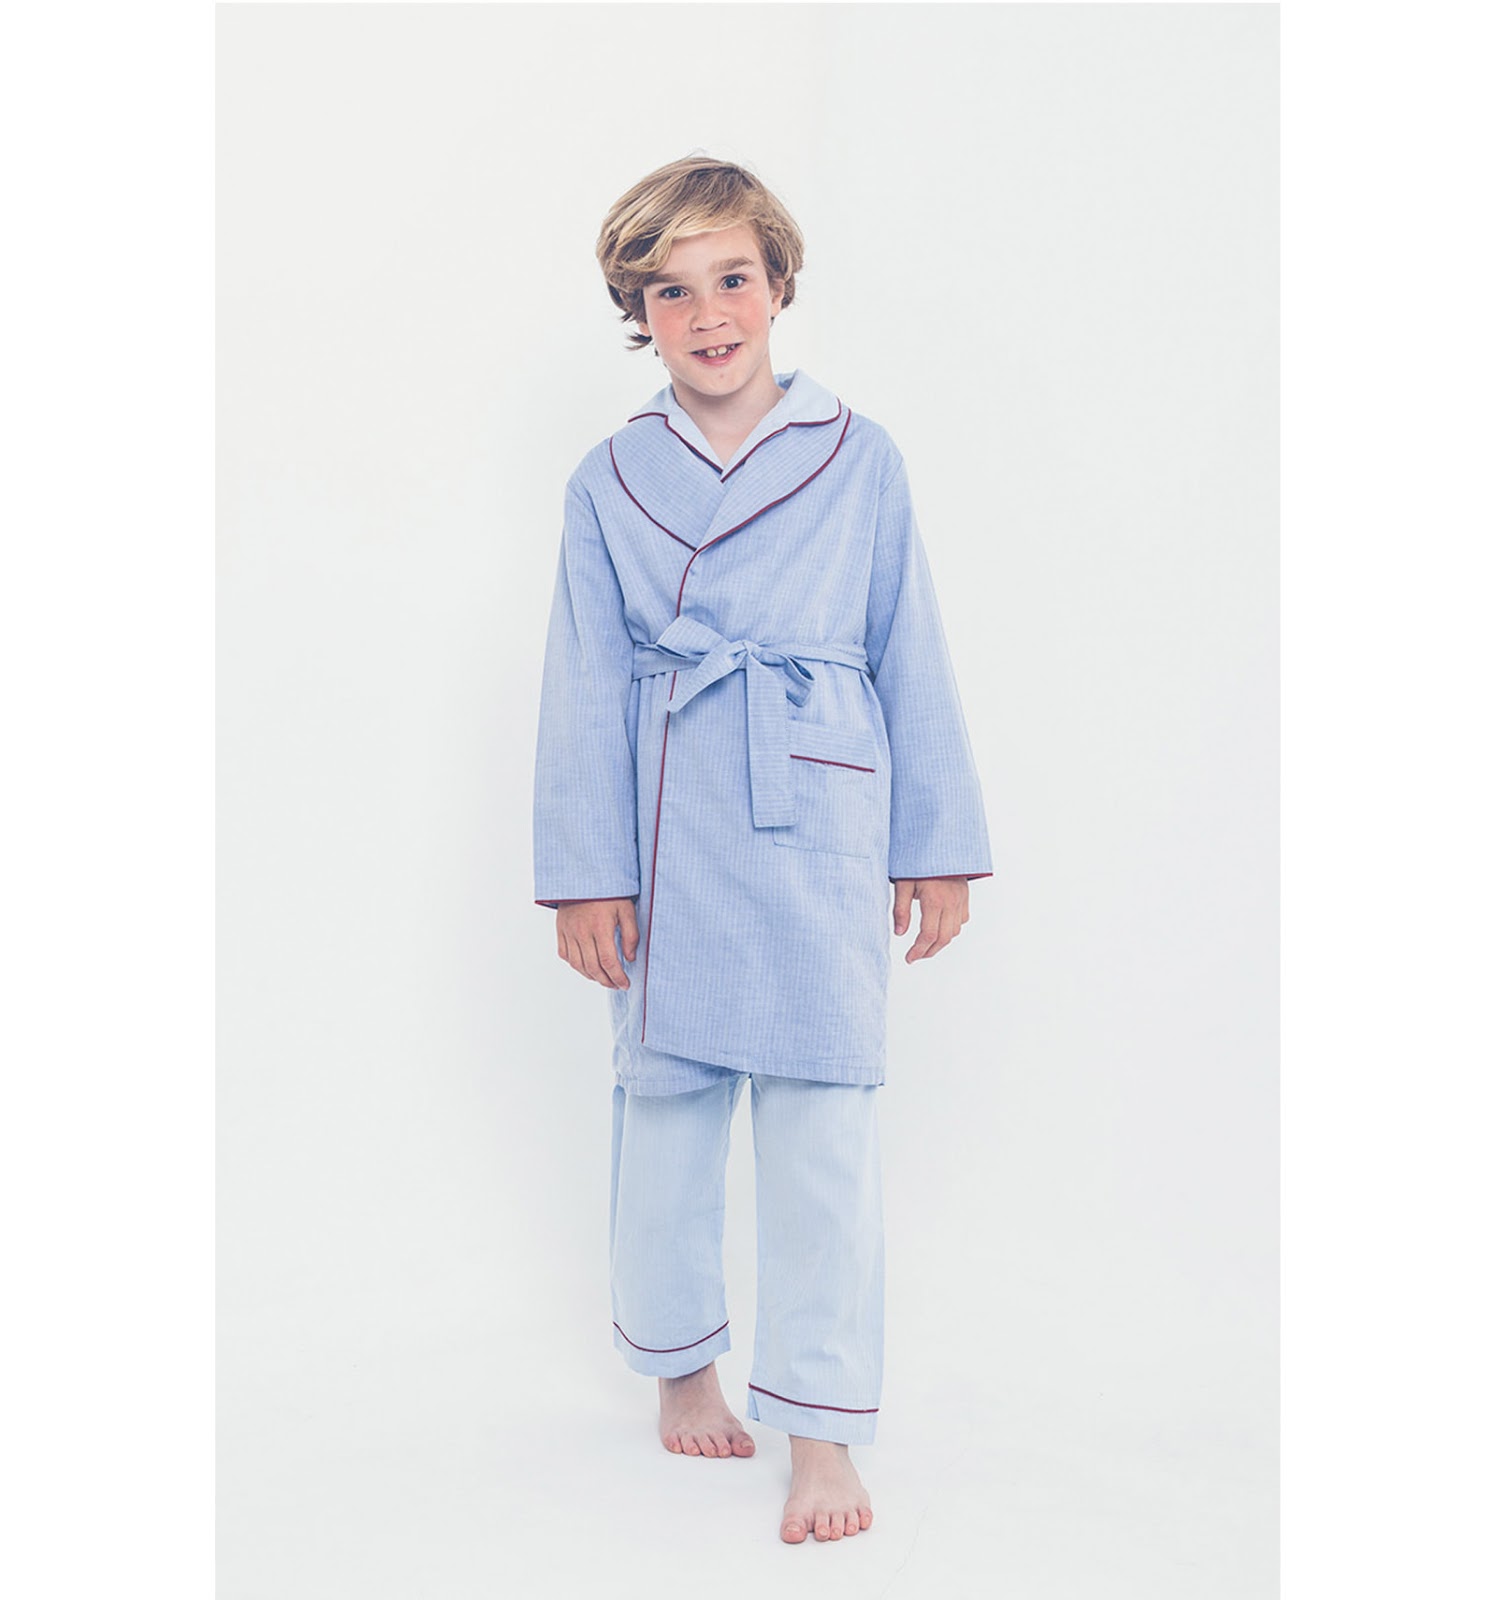 Los más vendidos: Mejor Pijamas y Batas para Niño